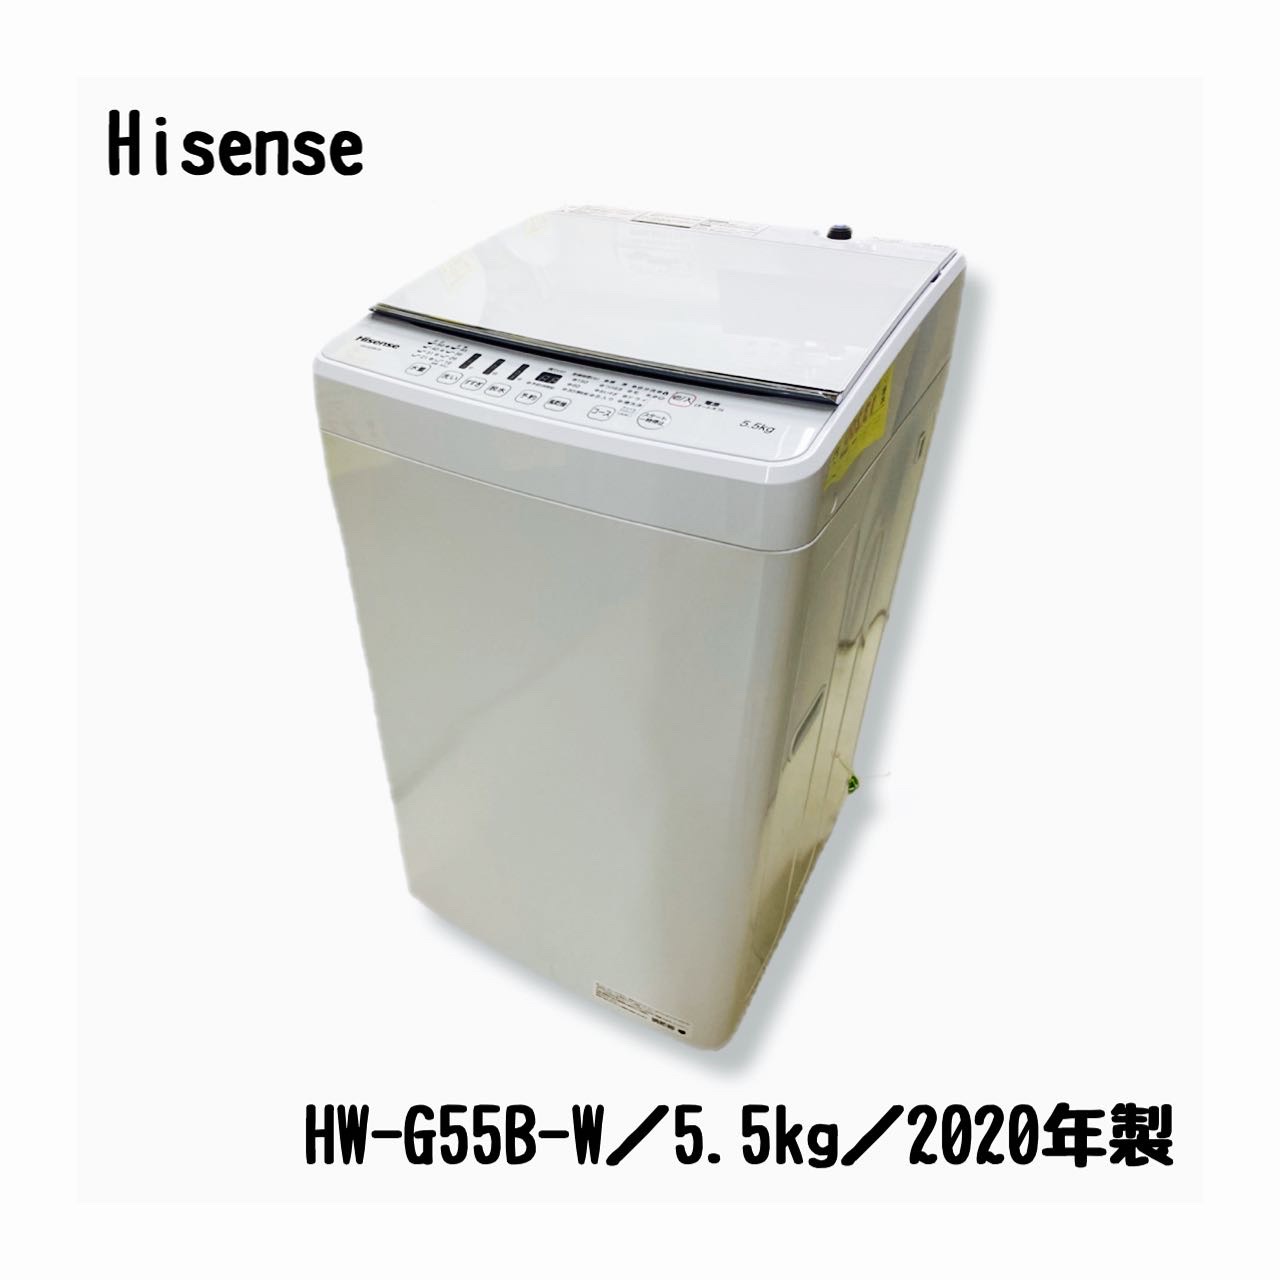 Hisense ハイセンス 洗濯機HW-G55B-W 全自動洗濯機 ホワイト [洗濯5.5 